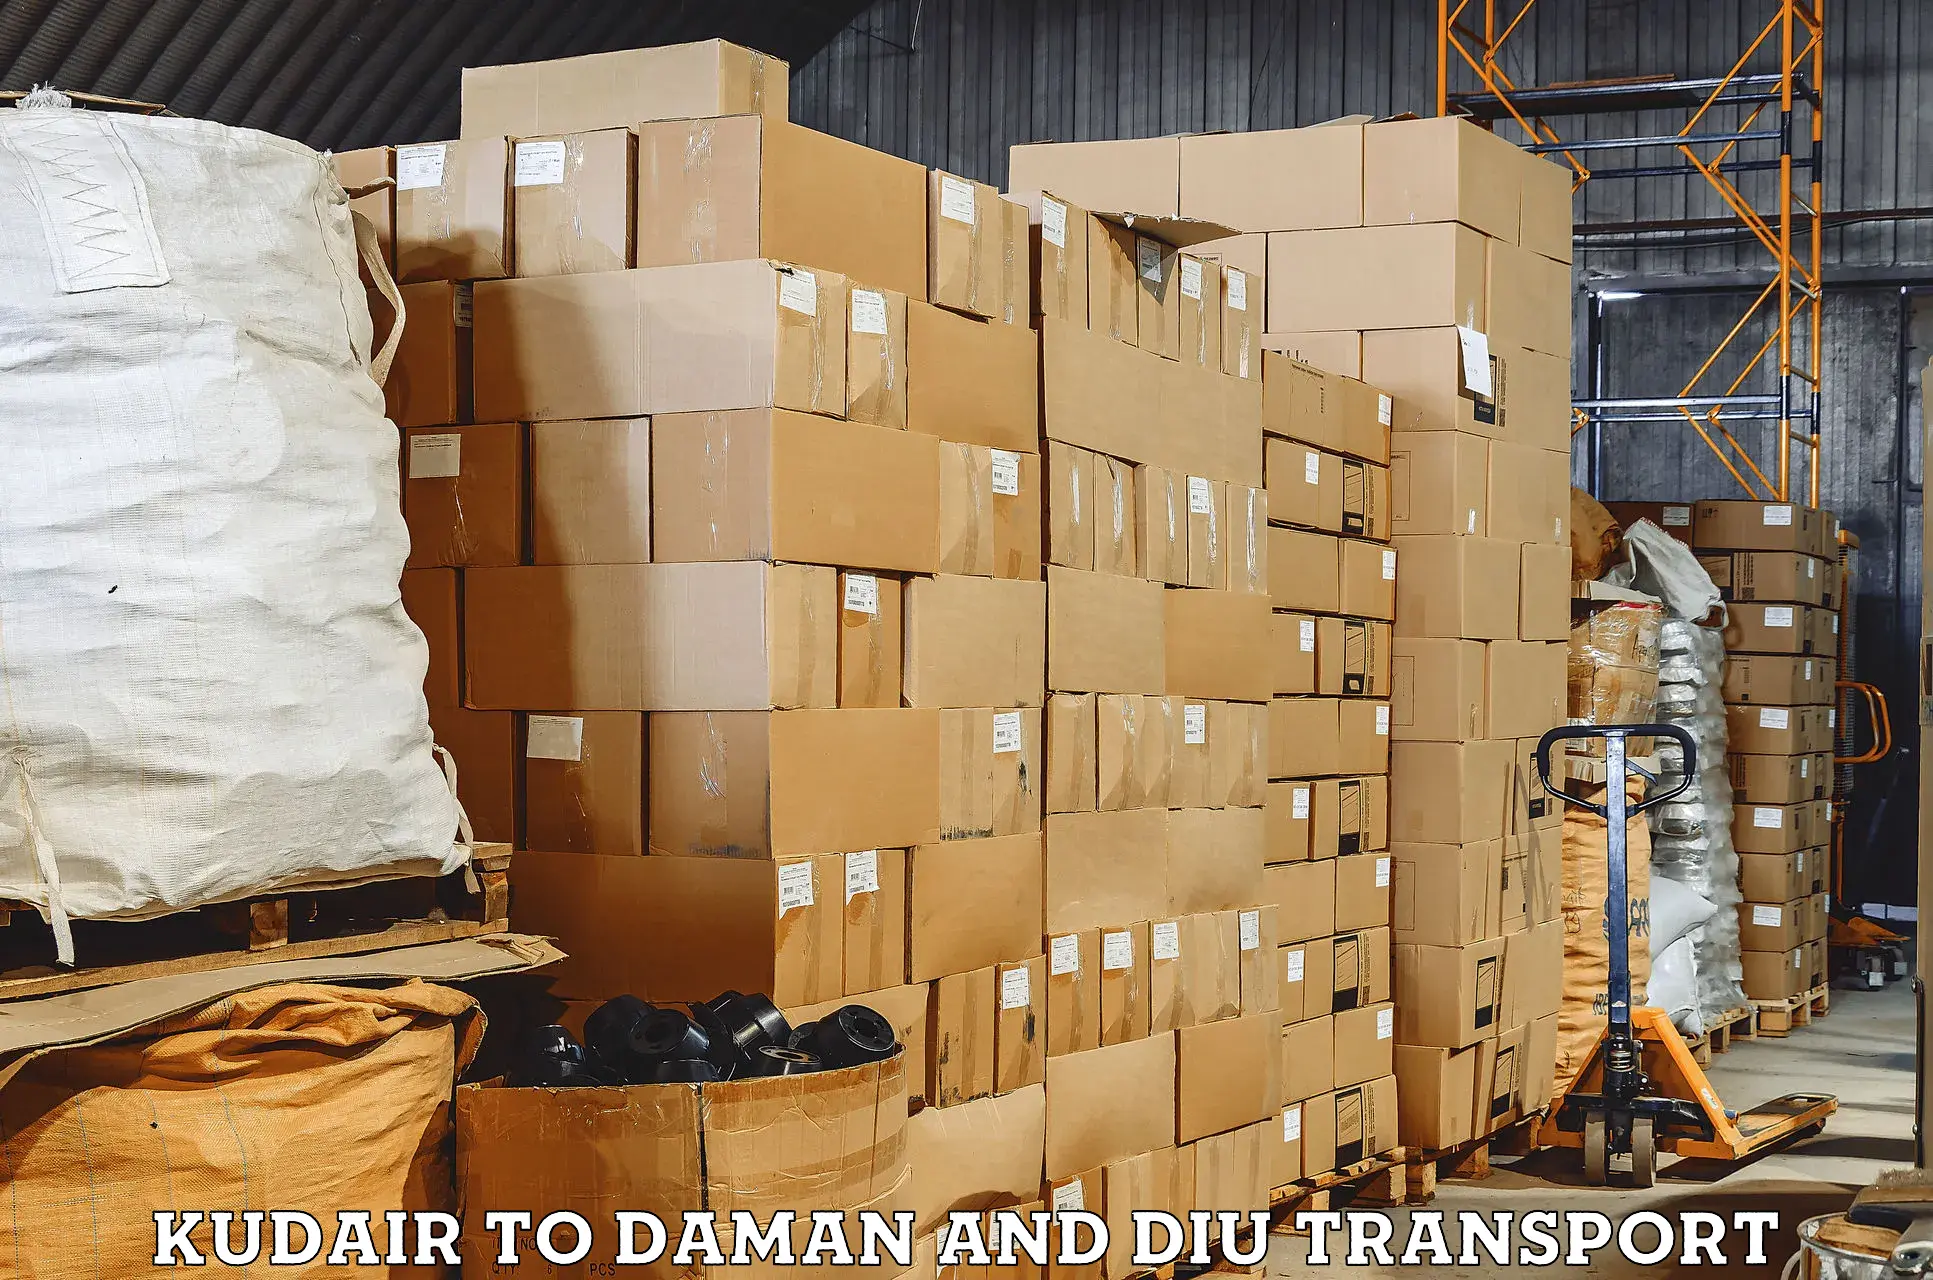 All India transport service Kudair to Daman and Diu